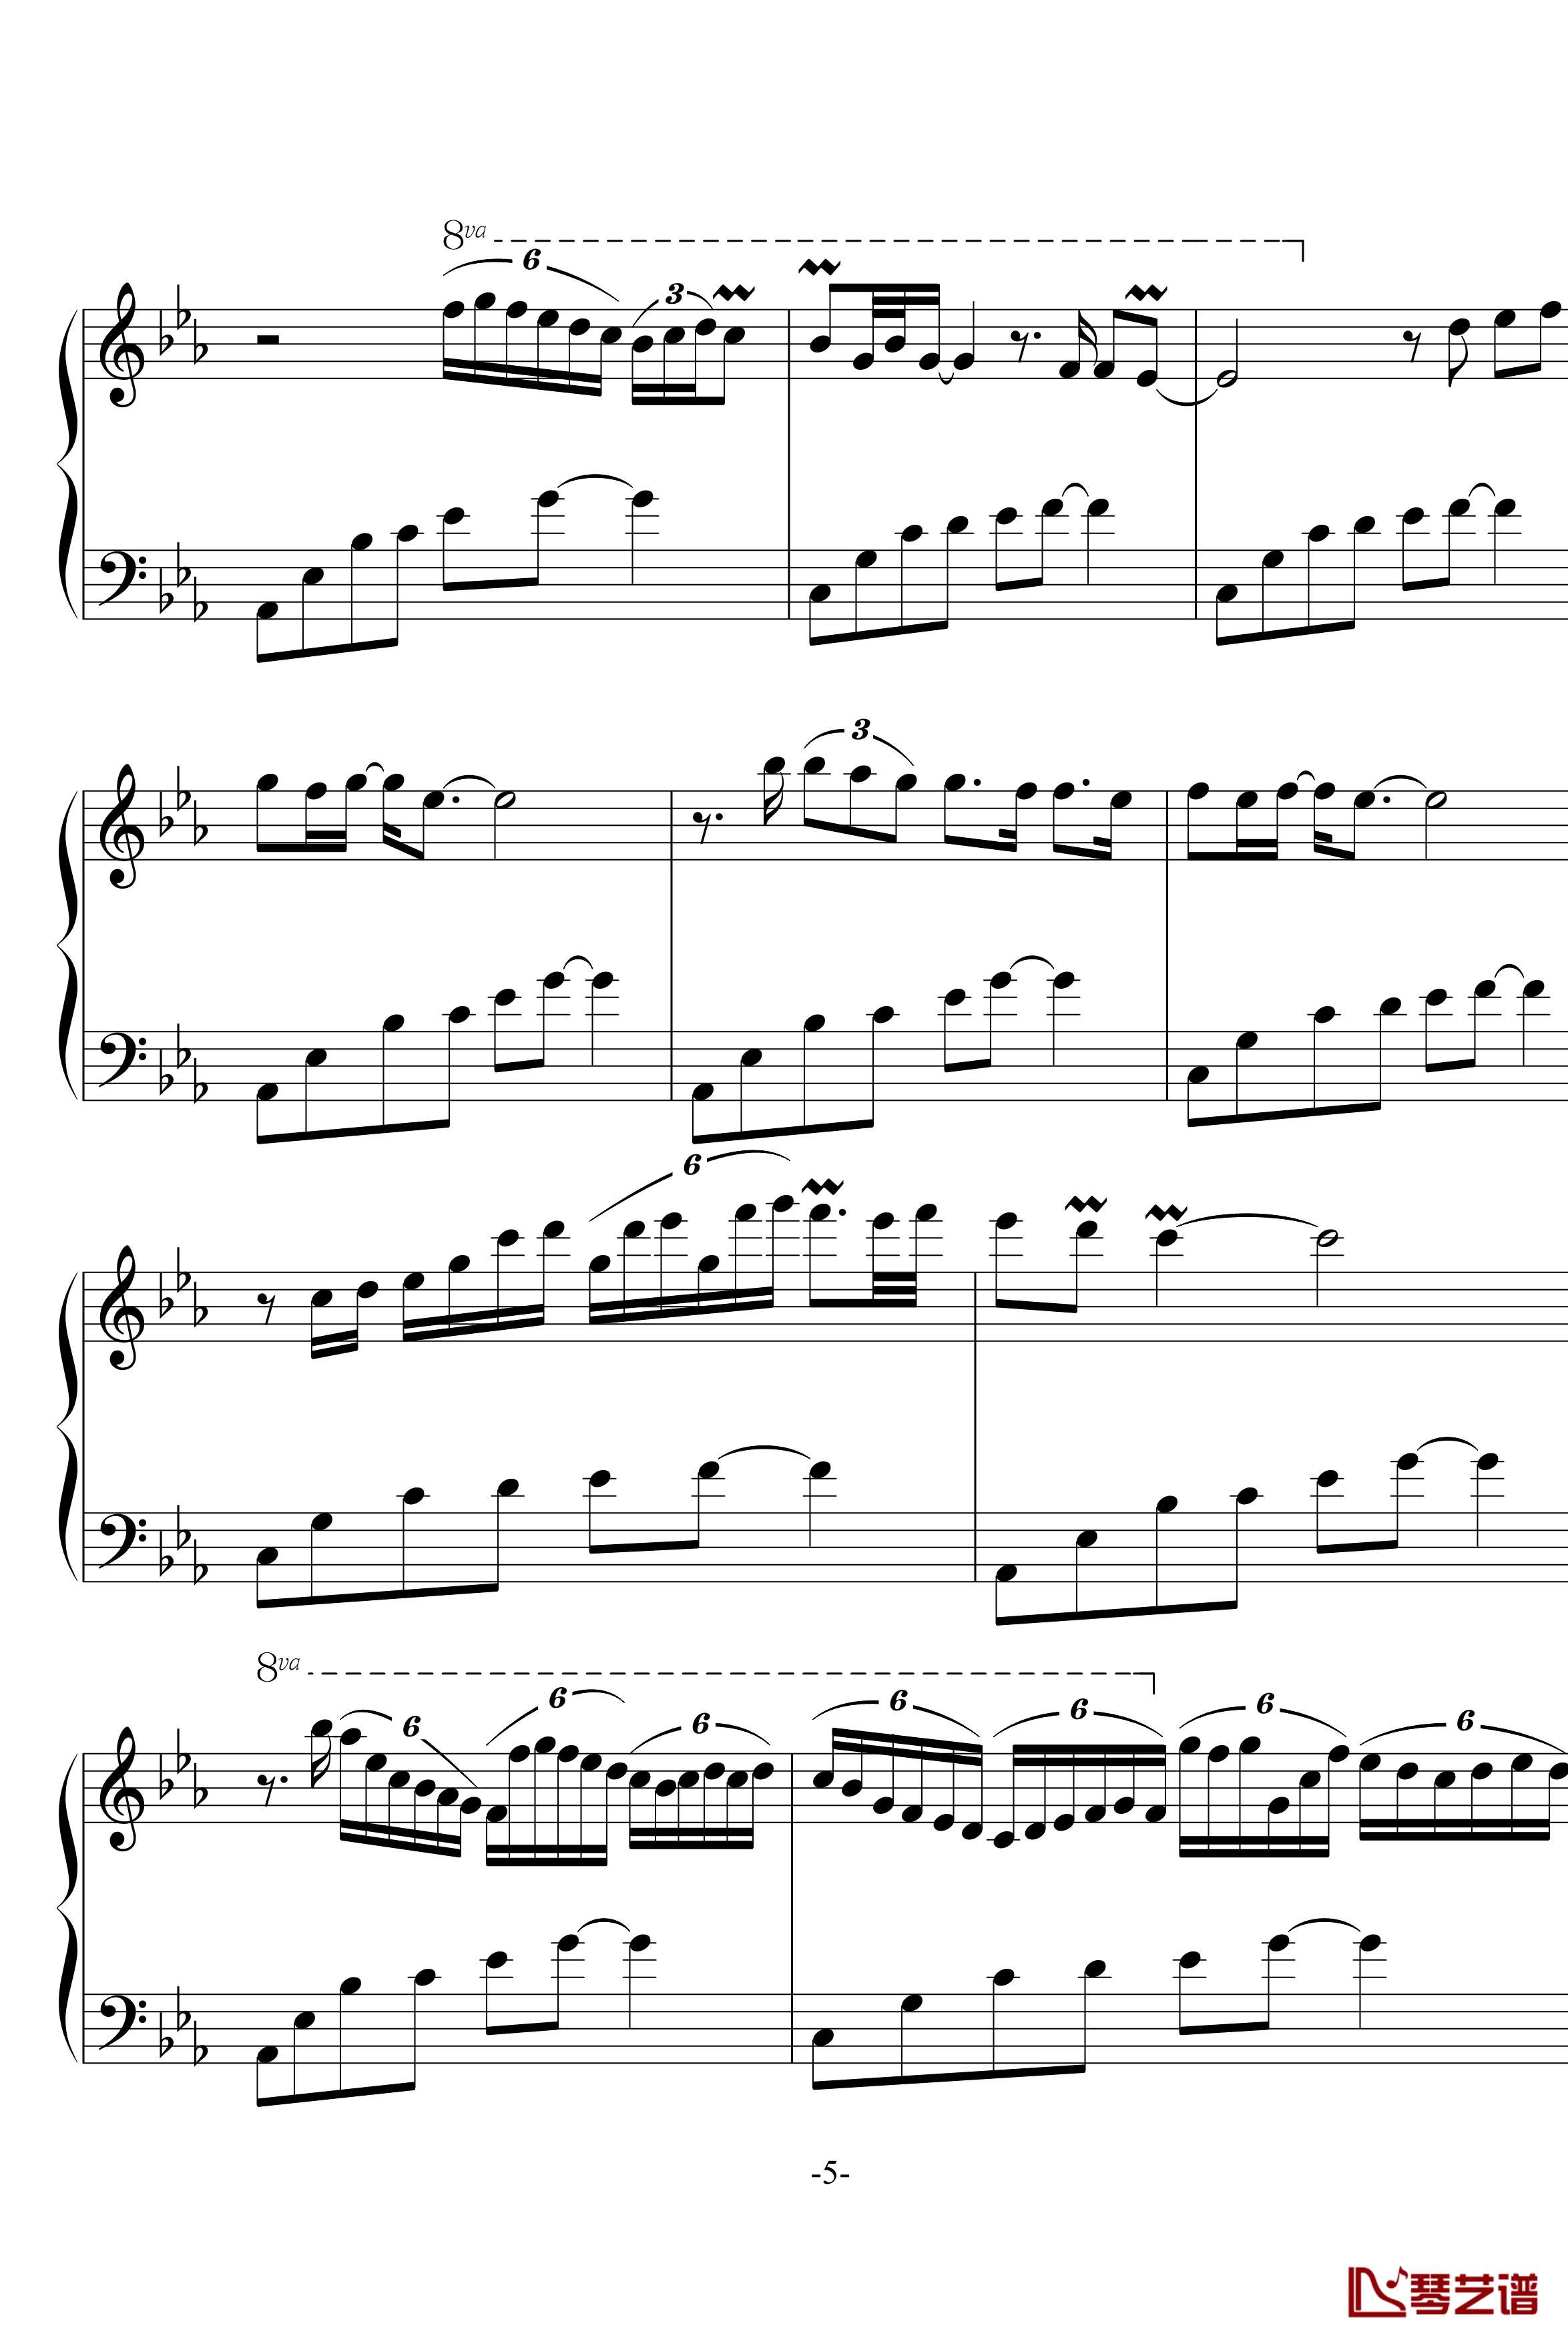 幽灵公主笛子与钢琴钢琴谱-OST-久石让5